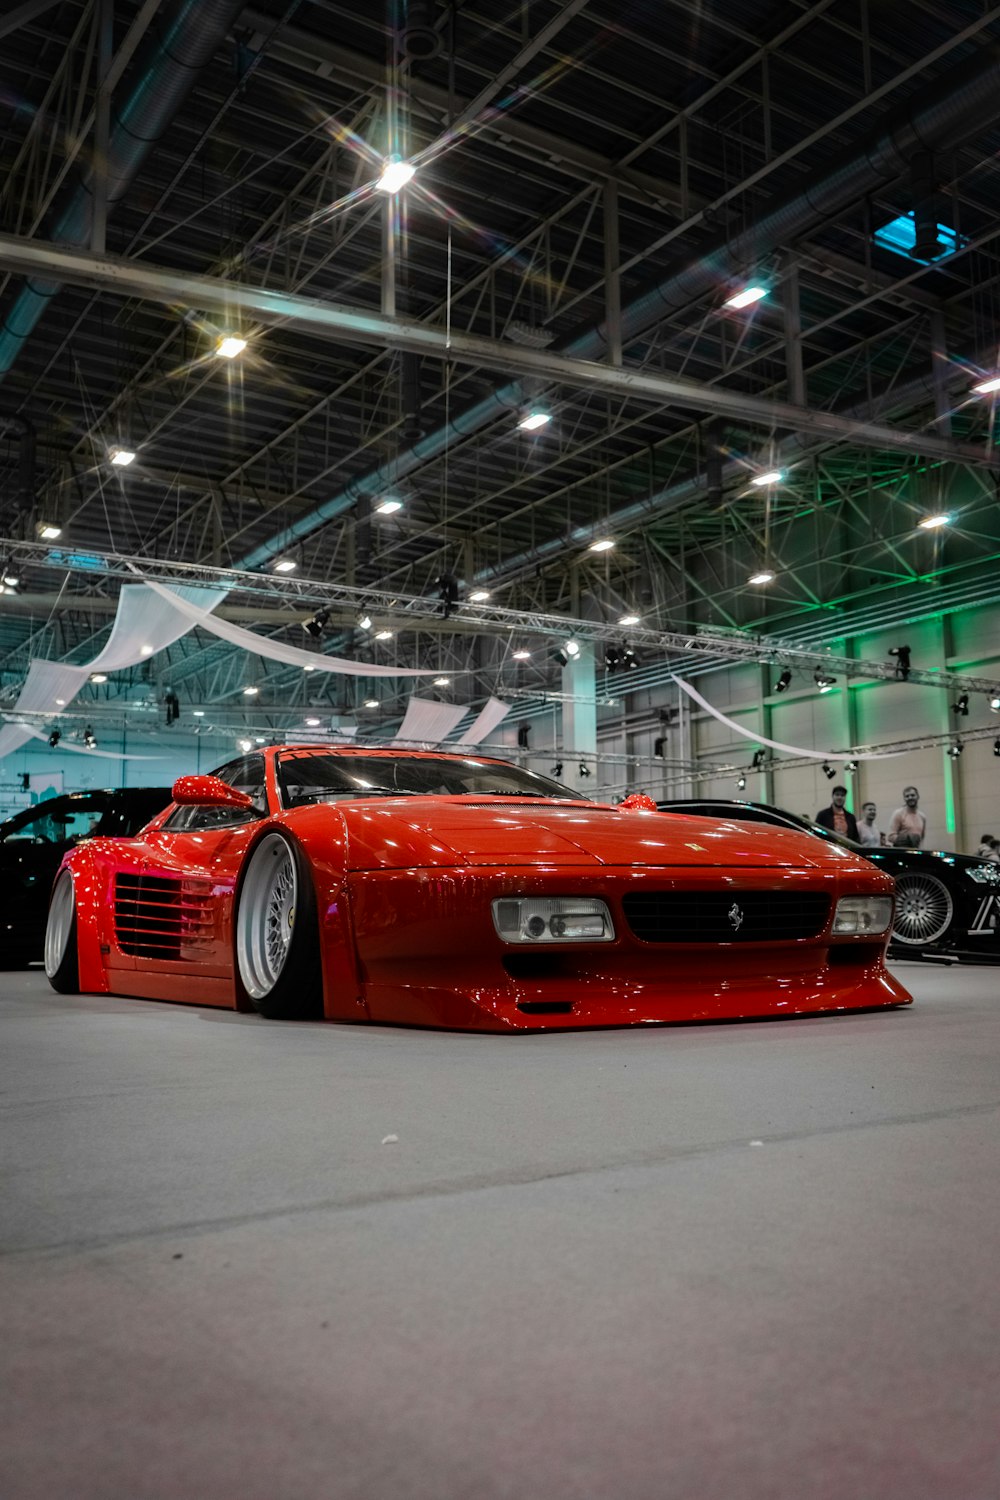 Ein roter Sportwagen in einer Garage geparkt